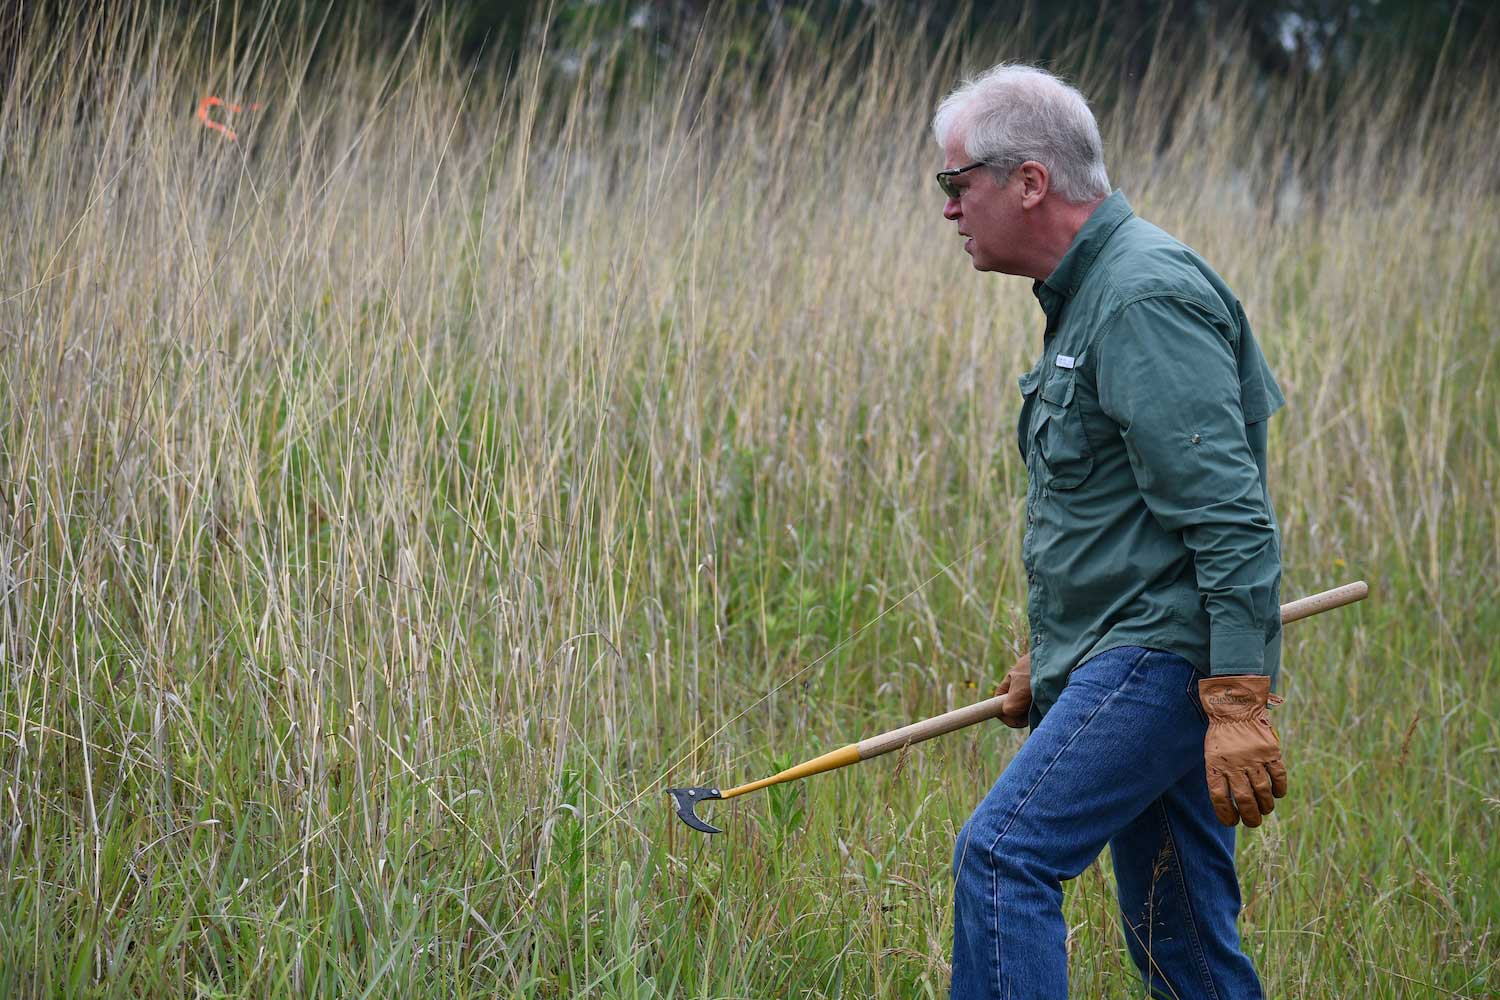 A person walking through a prairie carrying a tool.